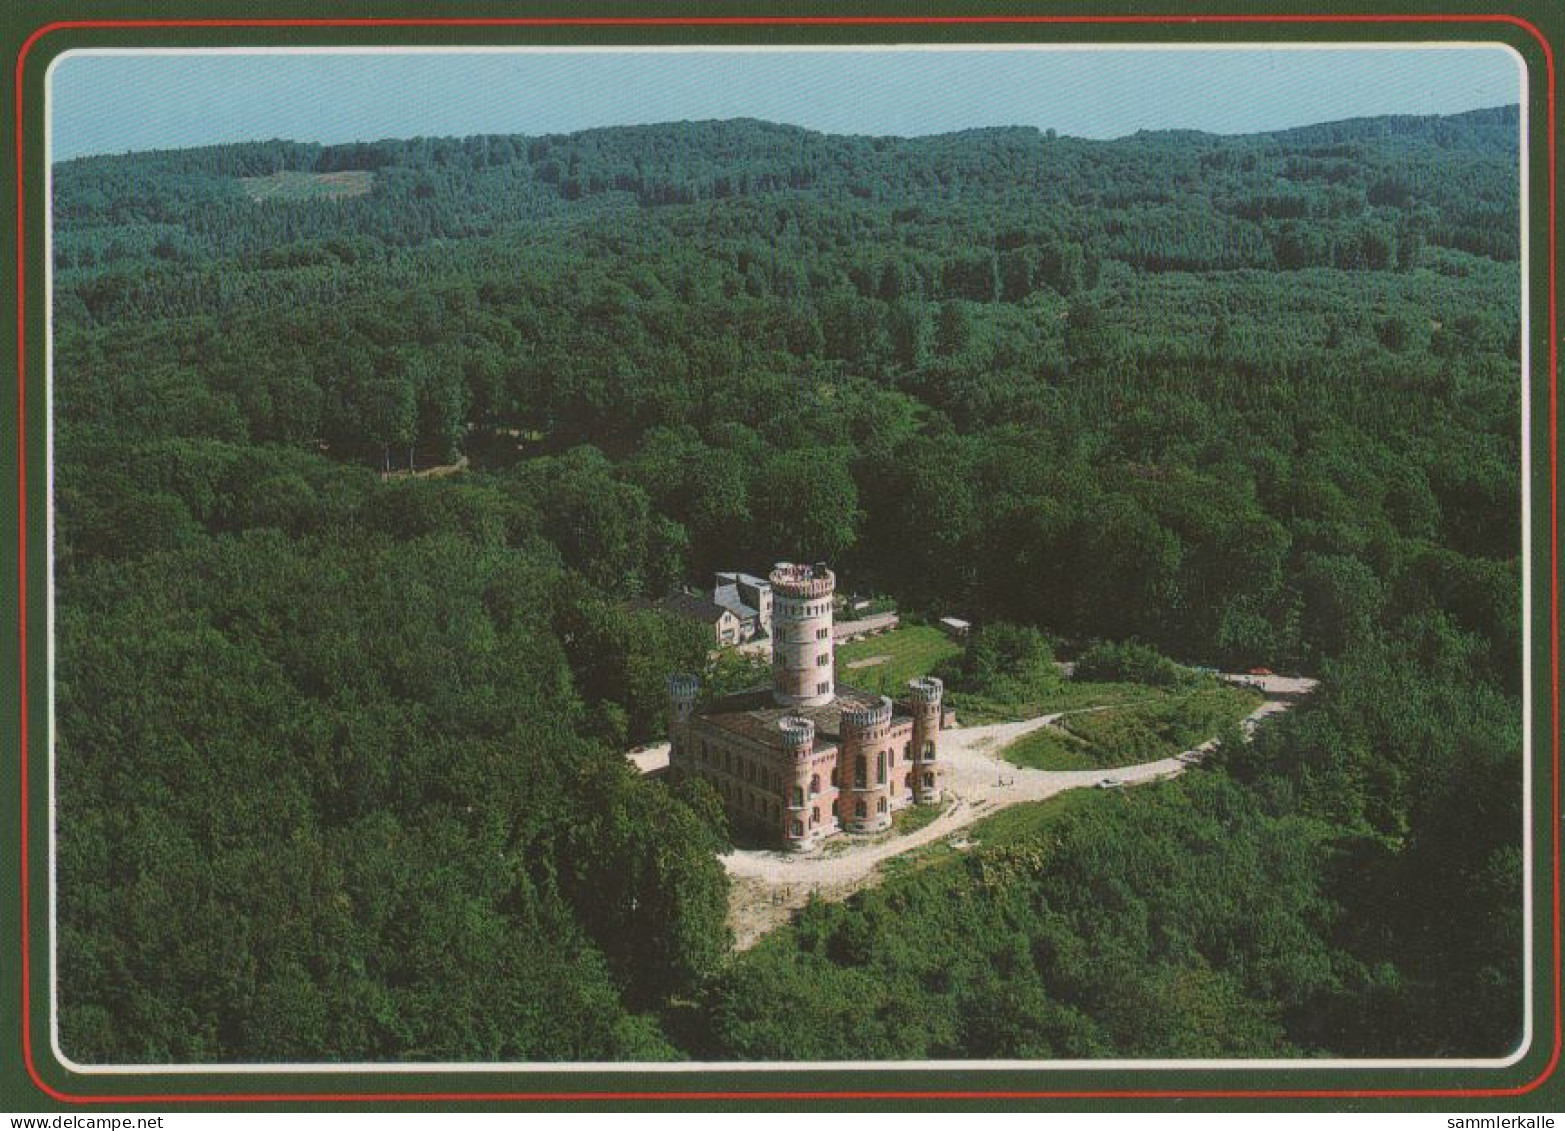 27057 - Rügen - Jagdschloss Granitz - 1993 - Ruegen